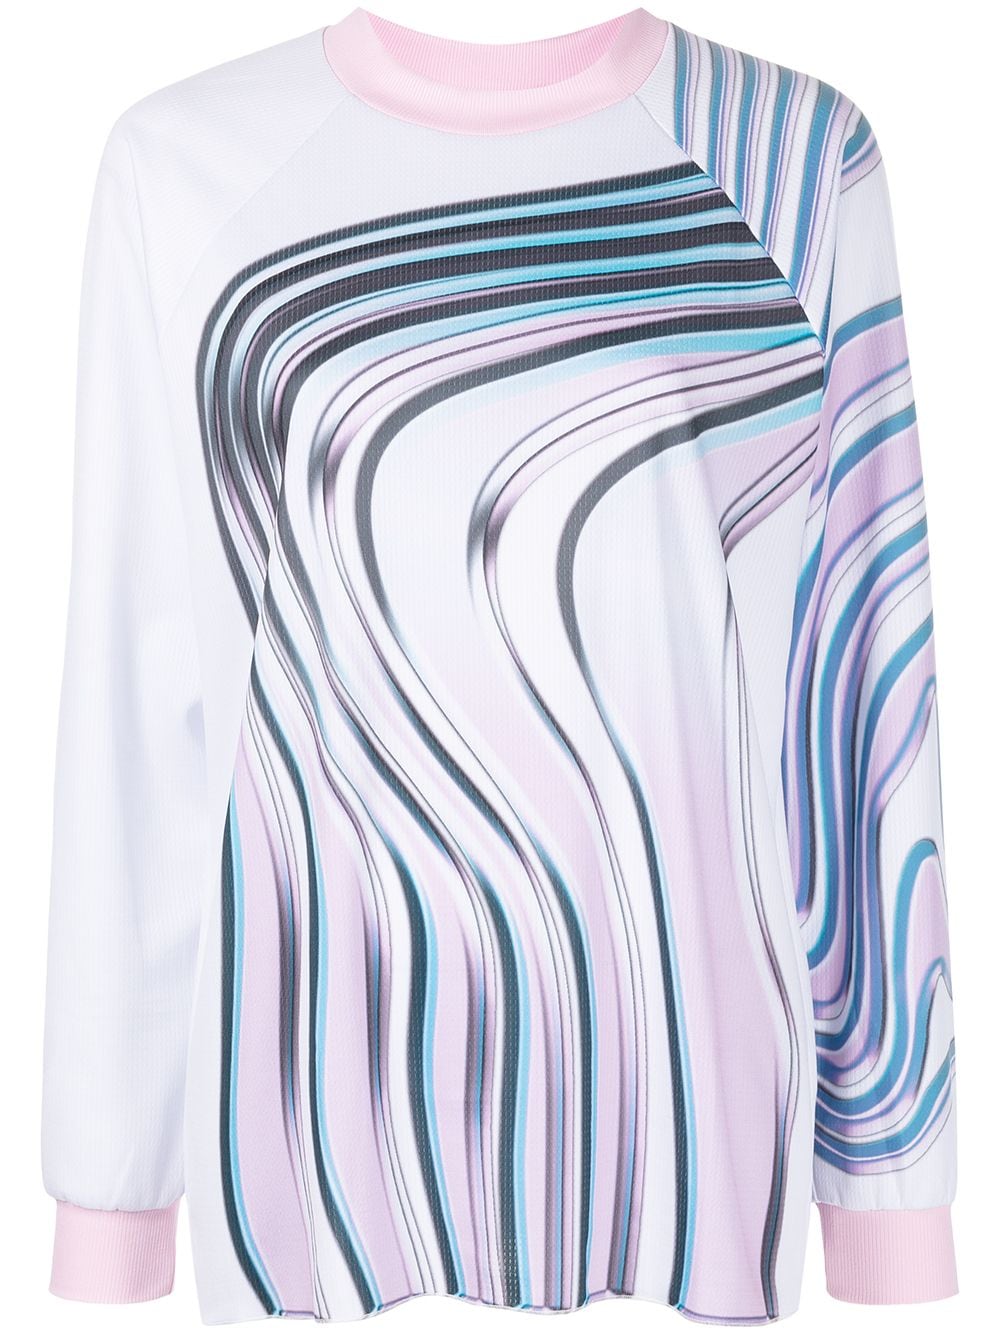 Maisie Wilen wave-print top - Multicolour von Maisie Wilen